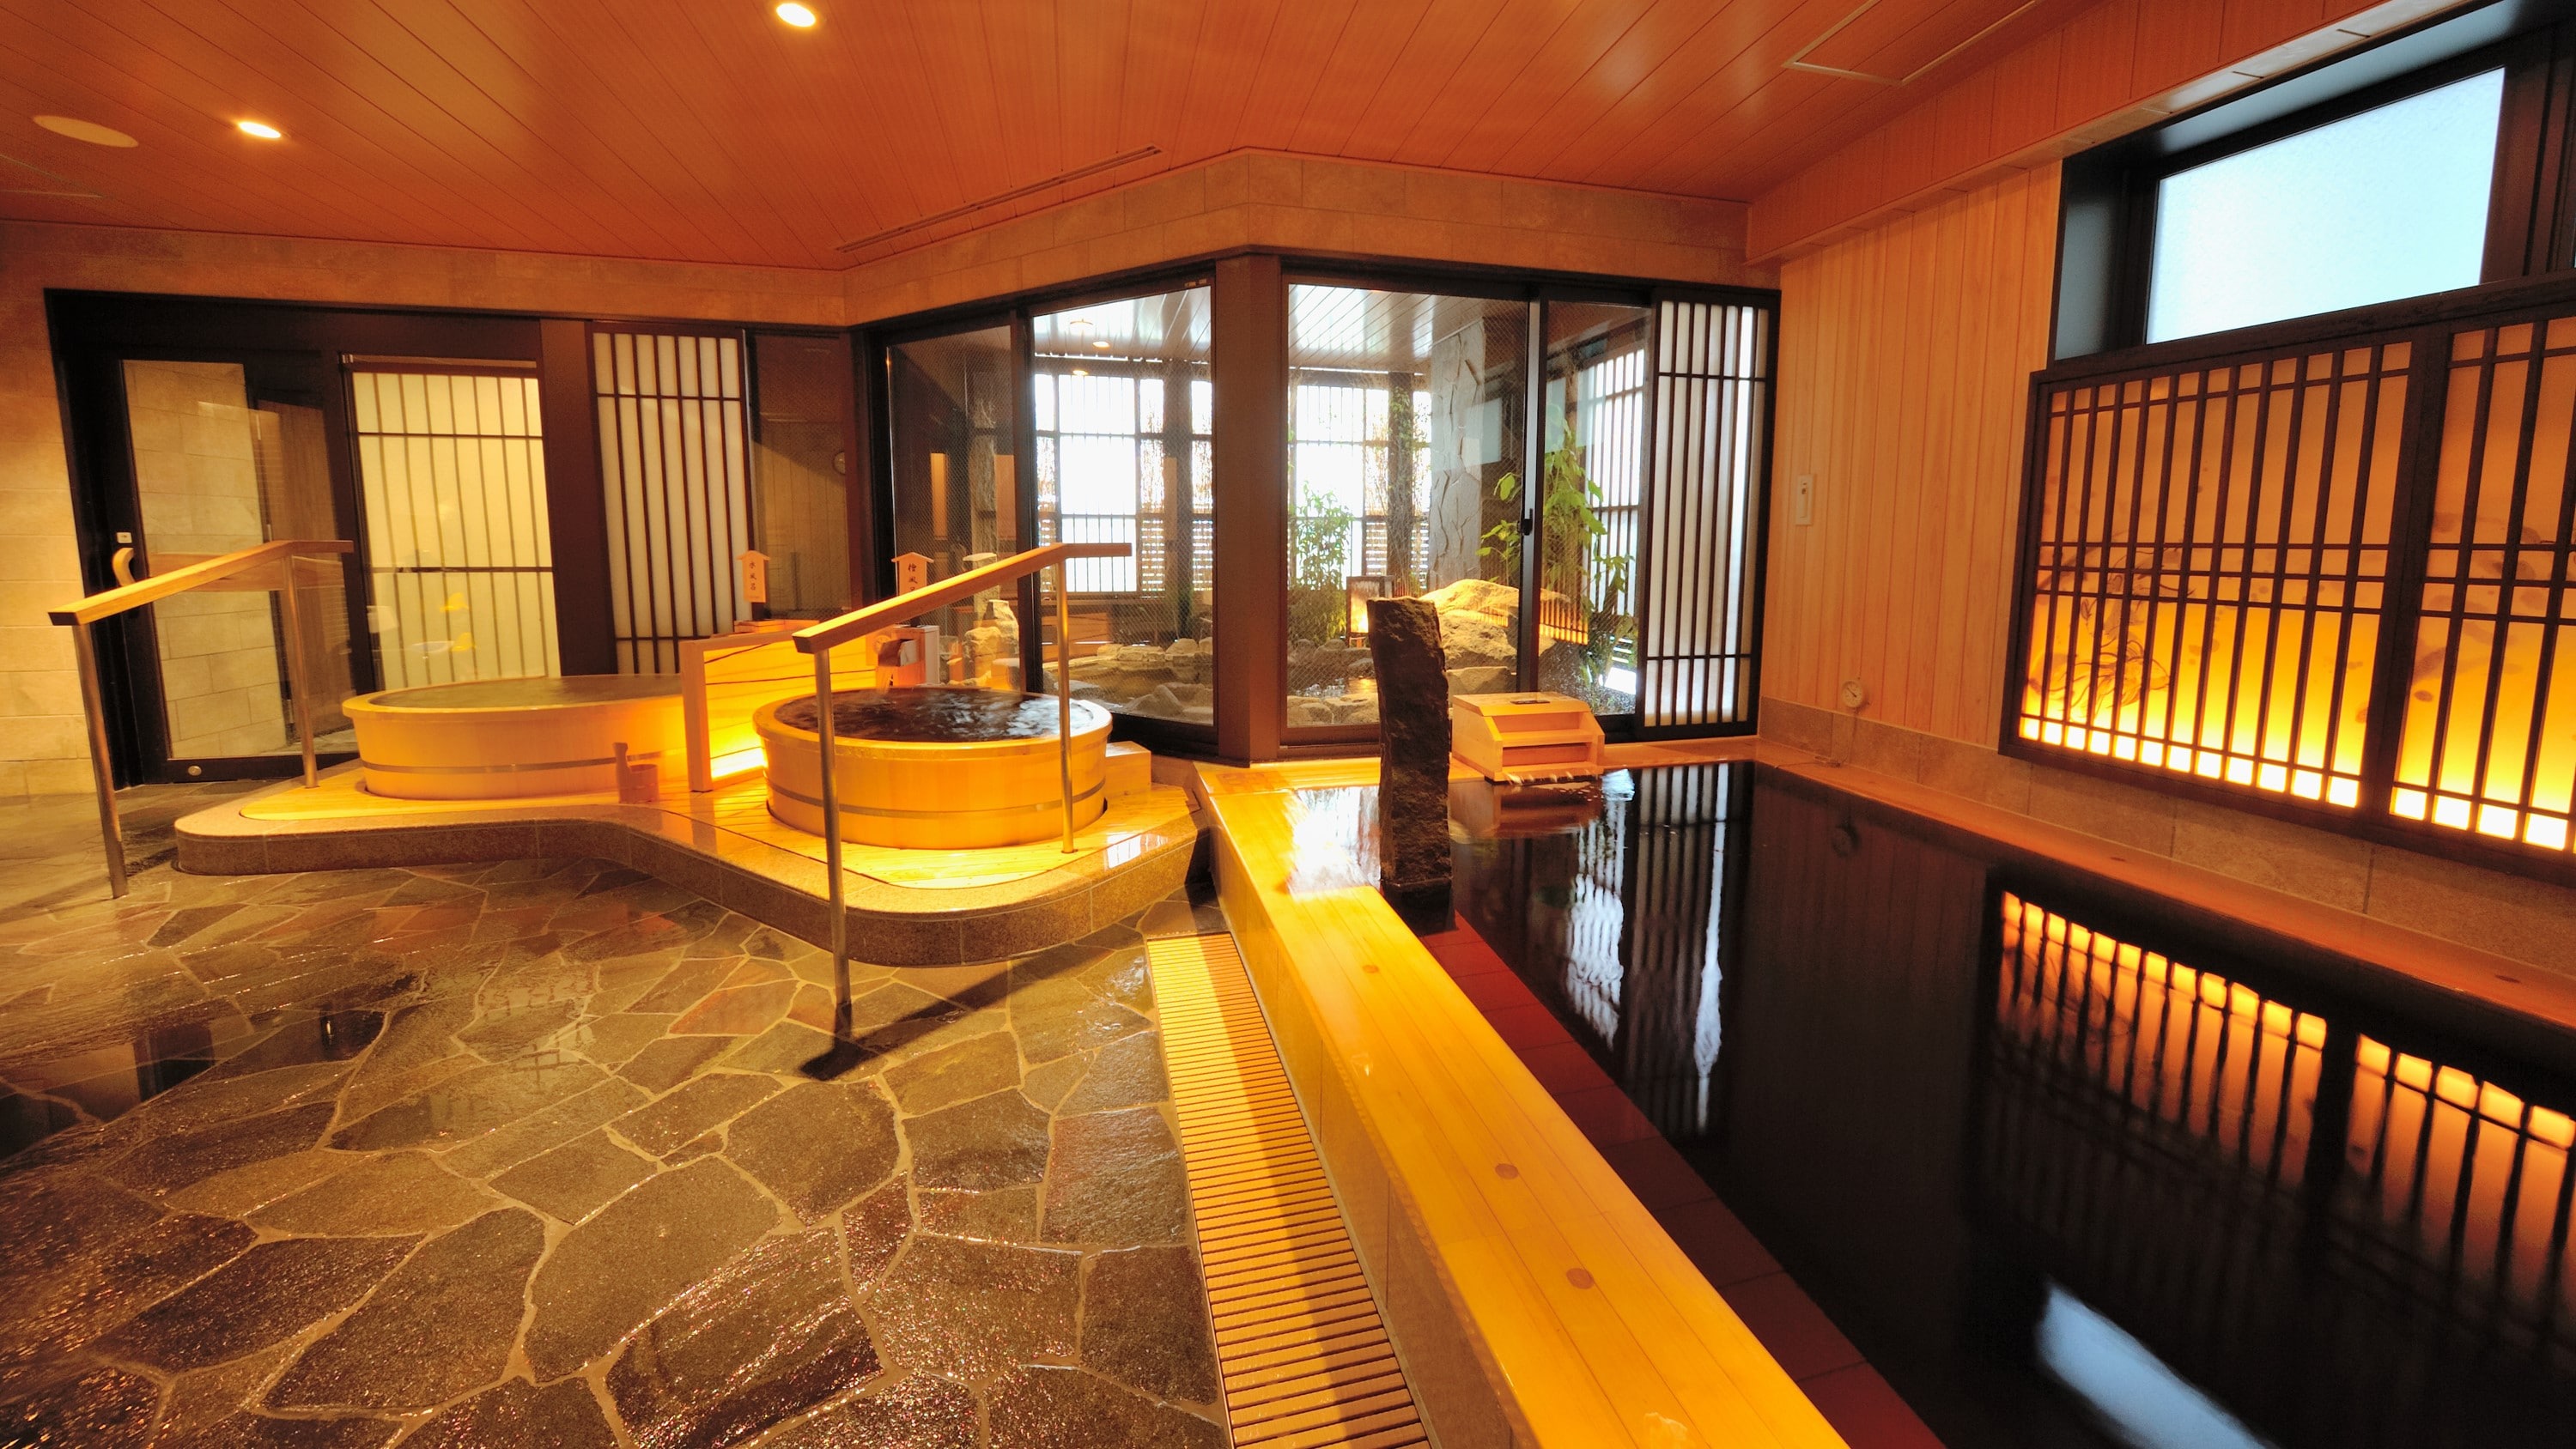 ◇ Women's indoor bath (hot water temperature 40-41 ℃)